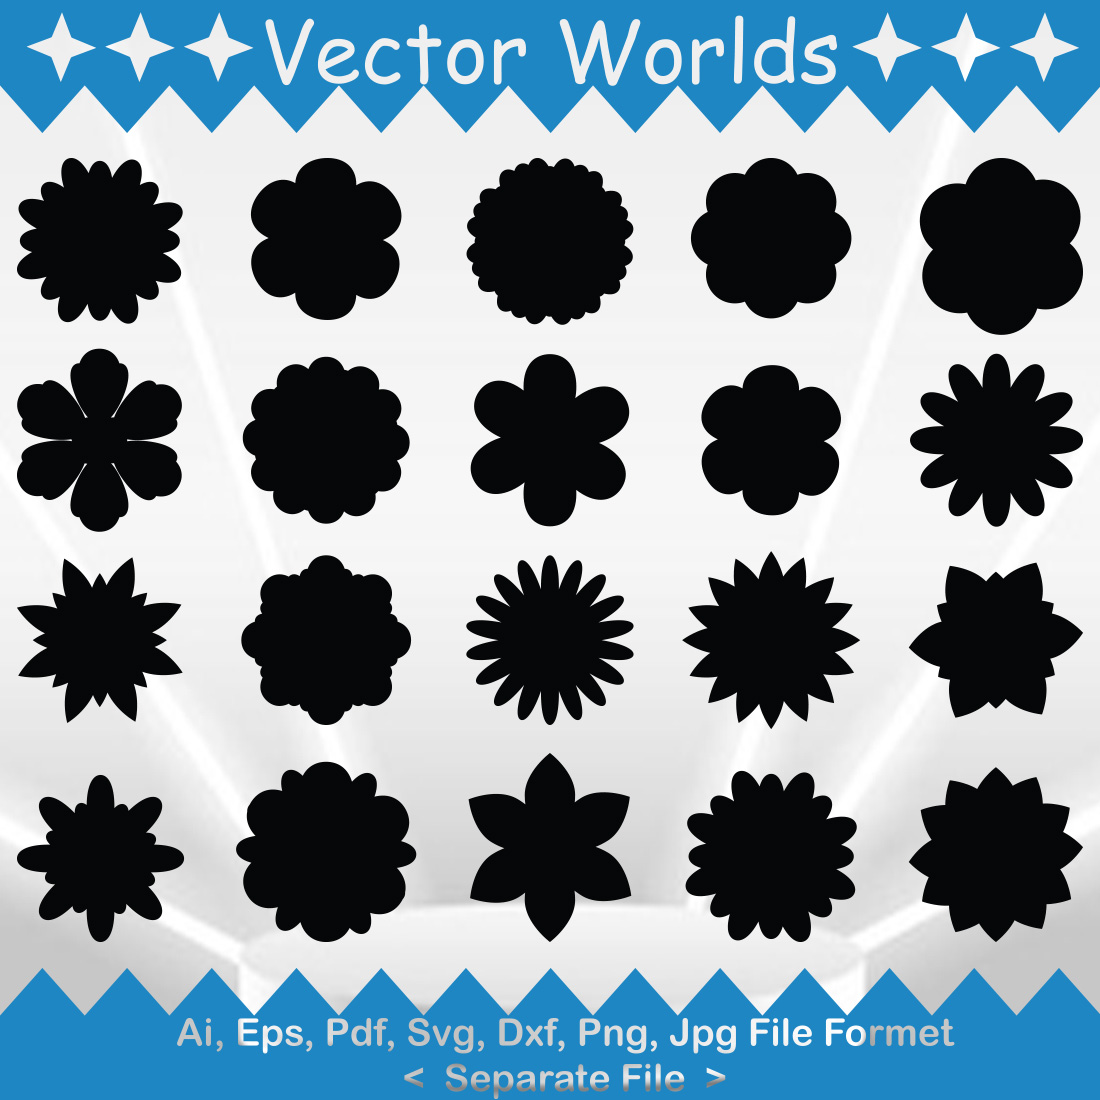 Flower SVG Vector Design cover image.